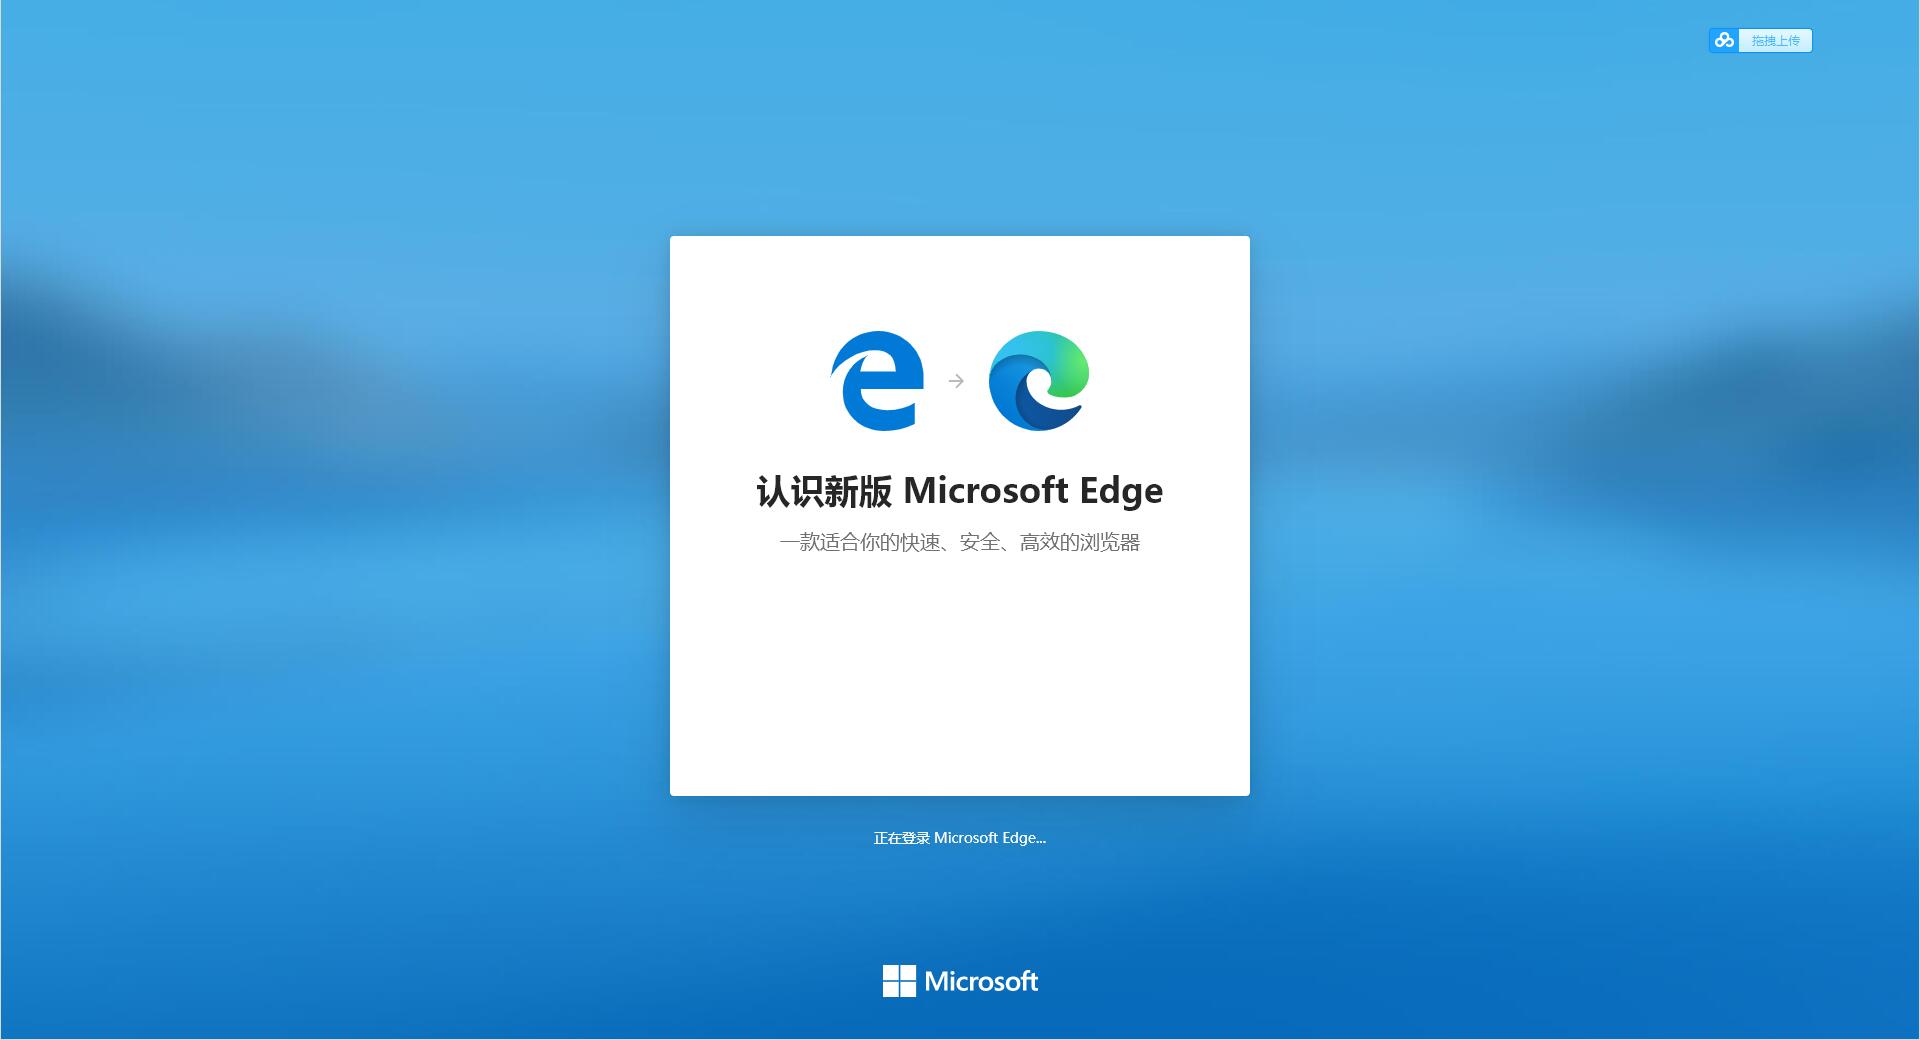 Microsoft Edge 64位�x�安�b包104.0.1293.54官方正式版截�D0